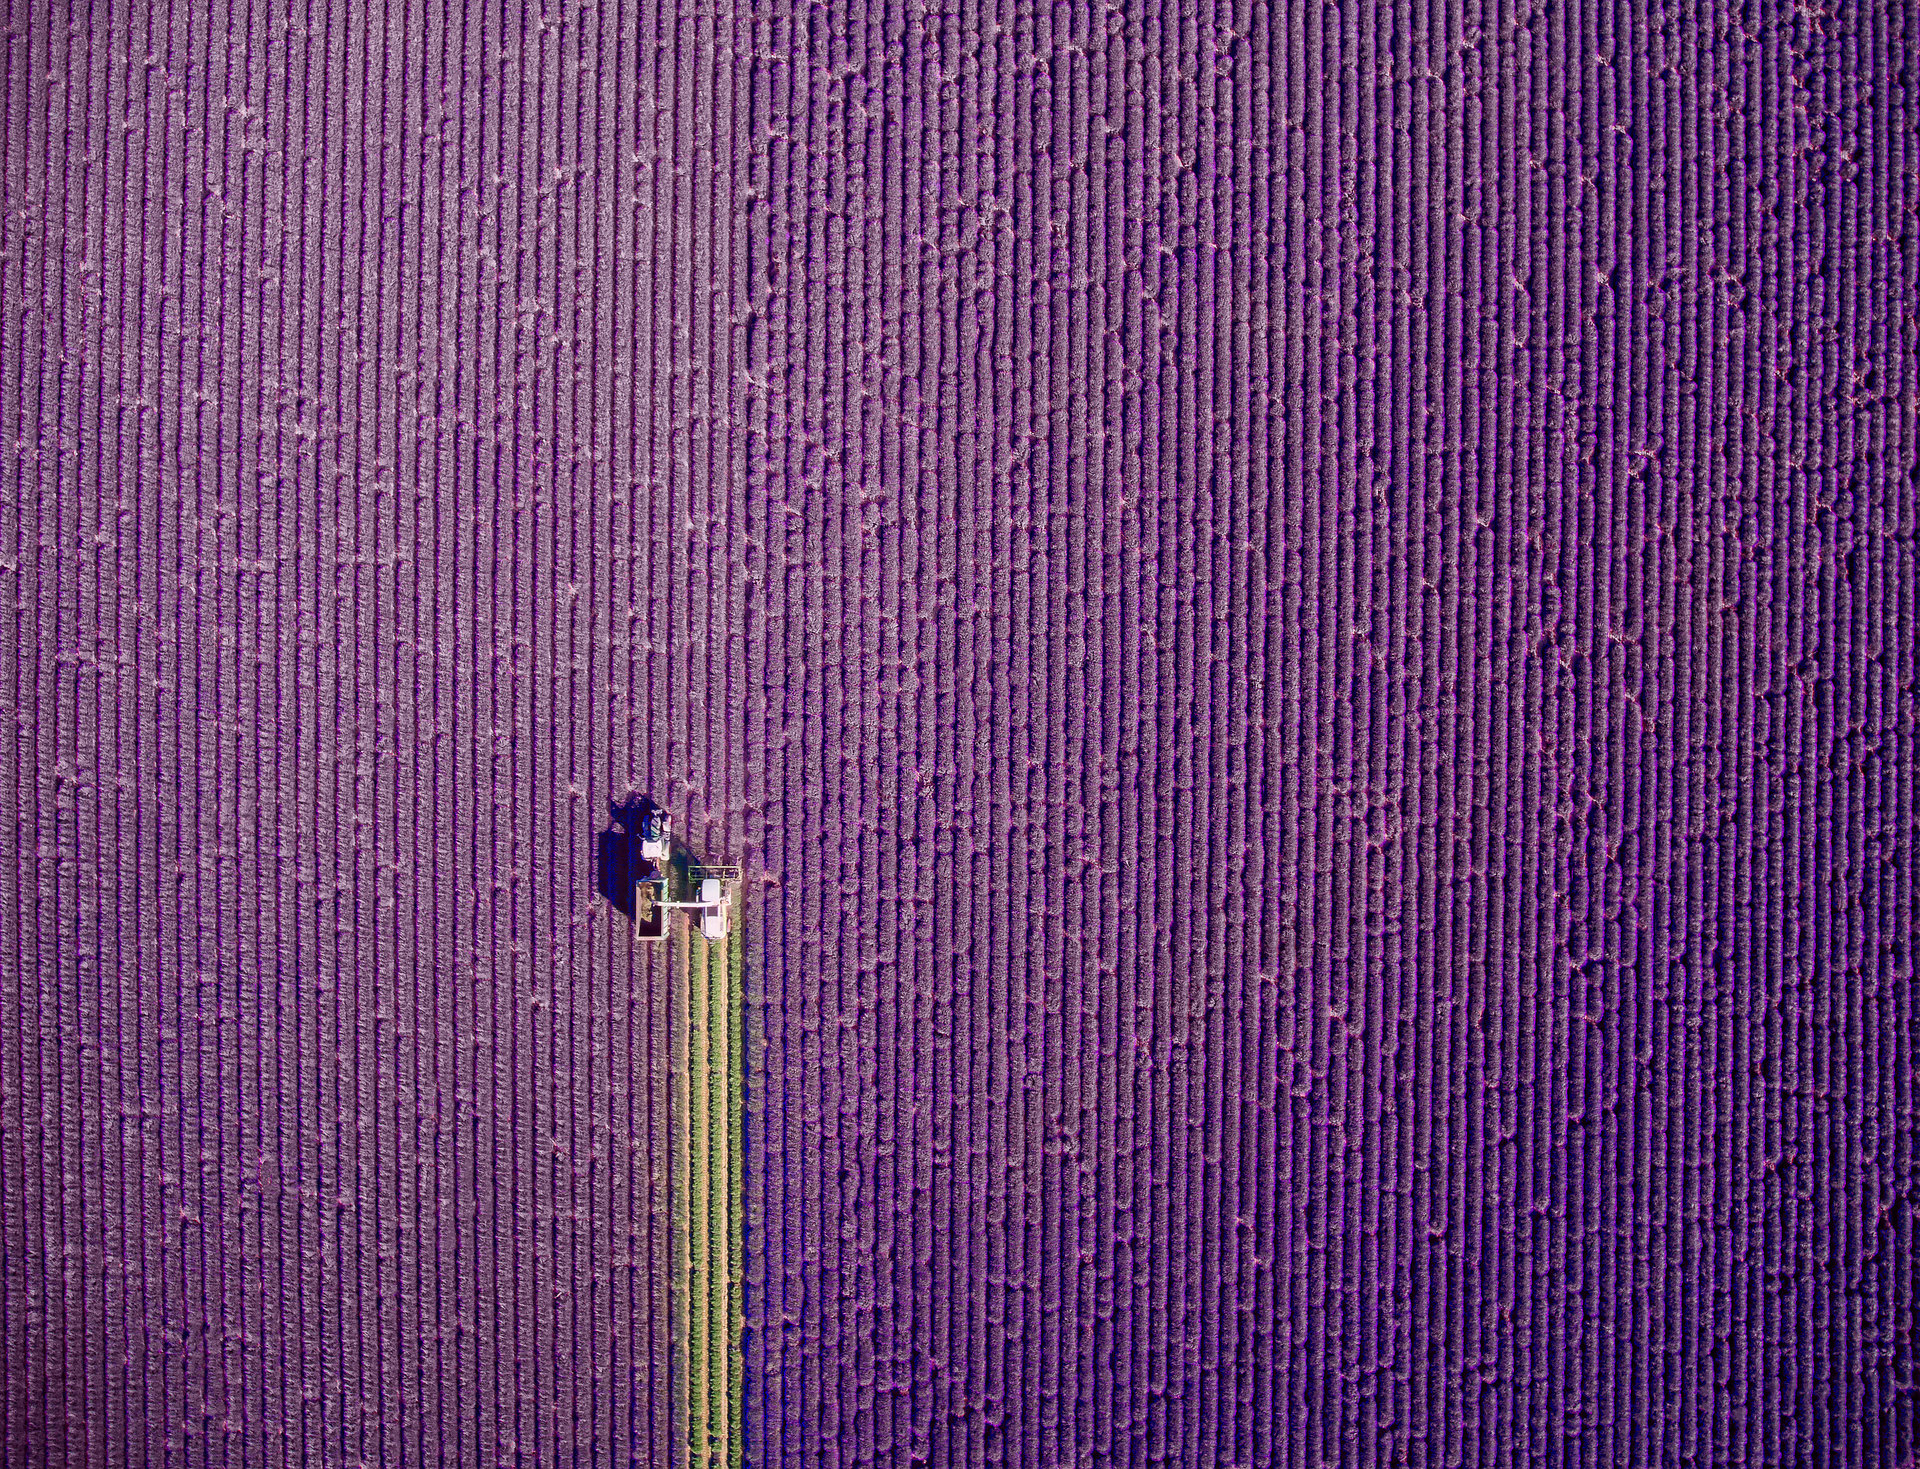 Bức ảnh chụp bằng flycam ấn tượng nhất thế giới